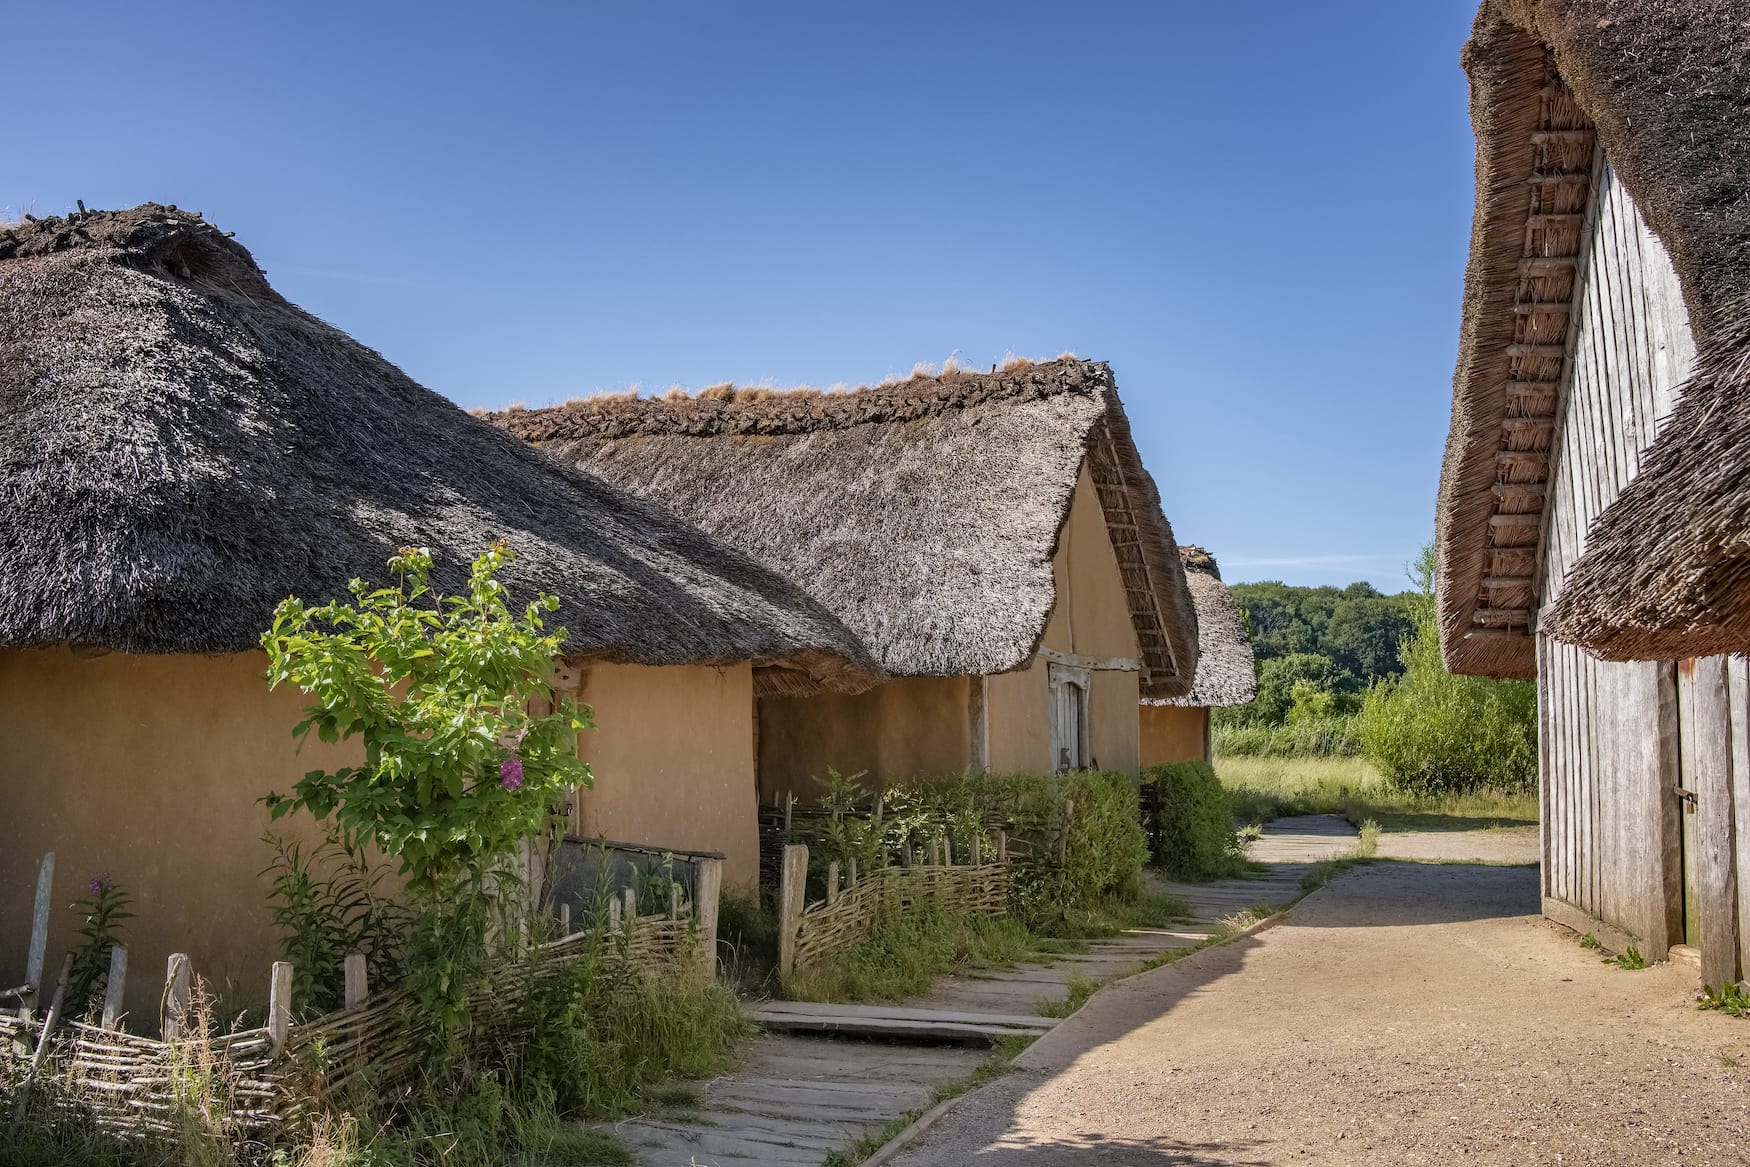 Die originalgetreu nachgebauten Häuser der Wikingersiedlung Haithabu gehören zum UNESCO Weltkulturerbe